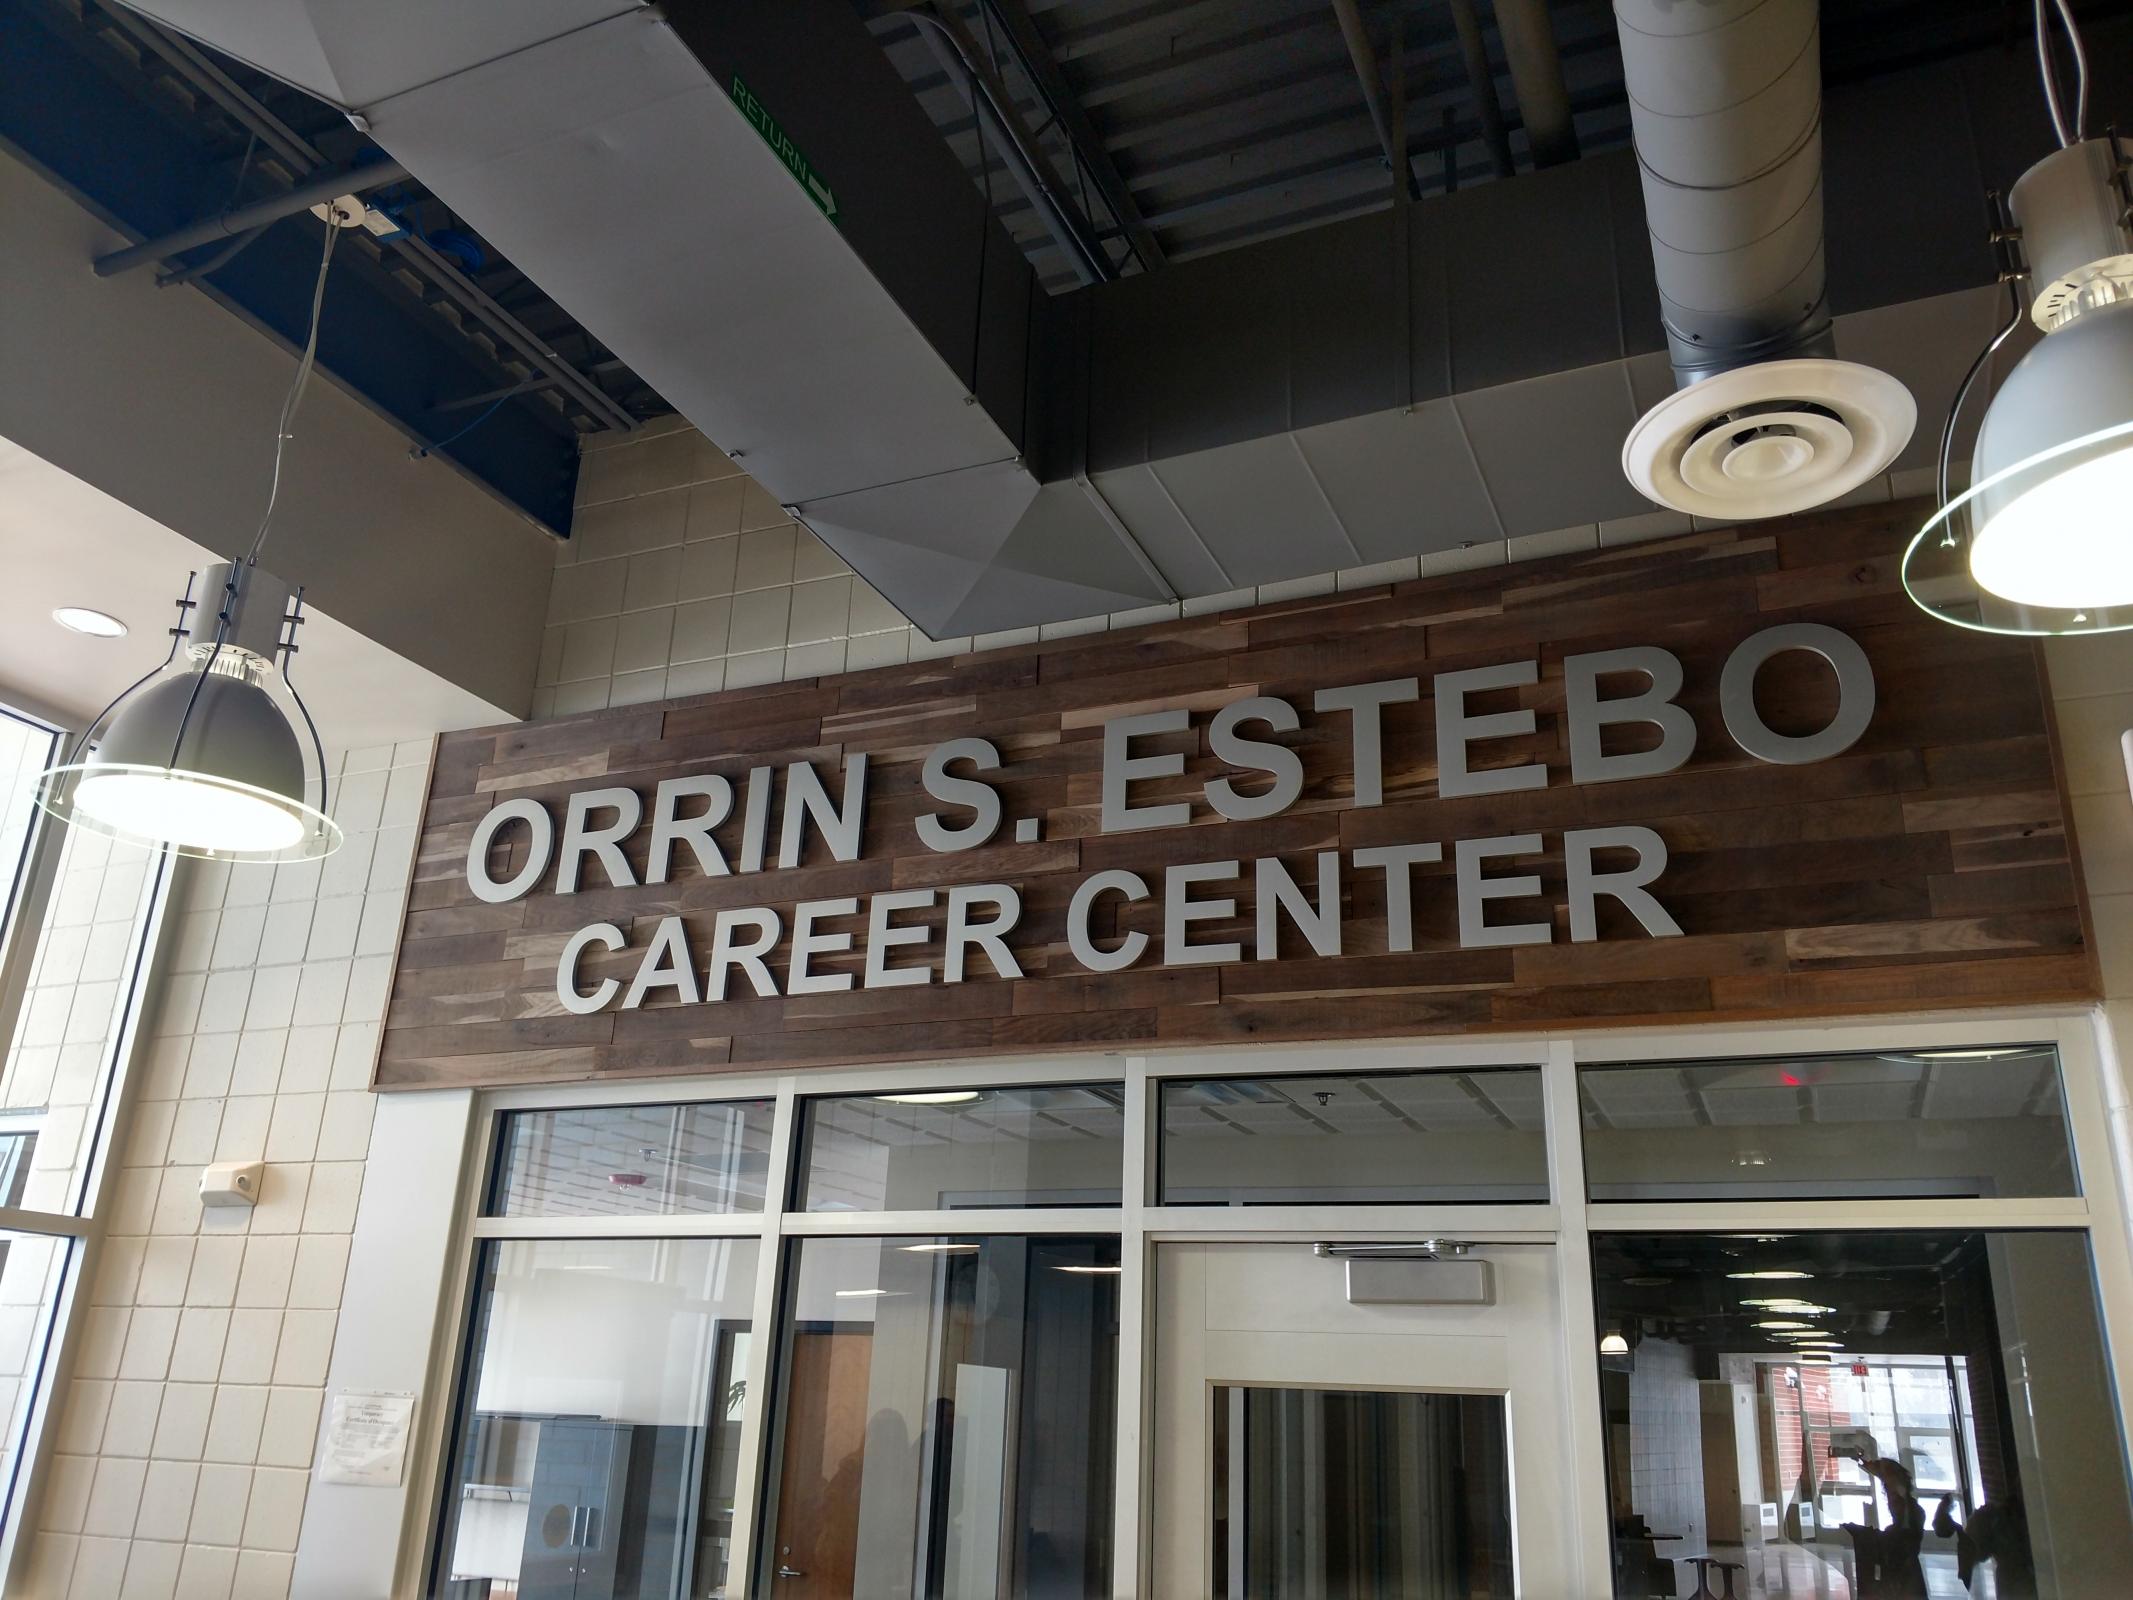 Orrin S. Estebo Career Development Center